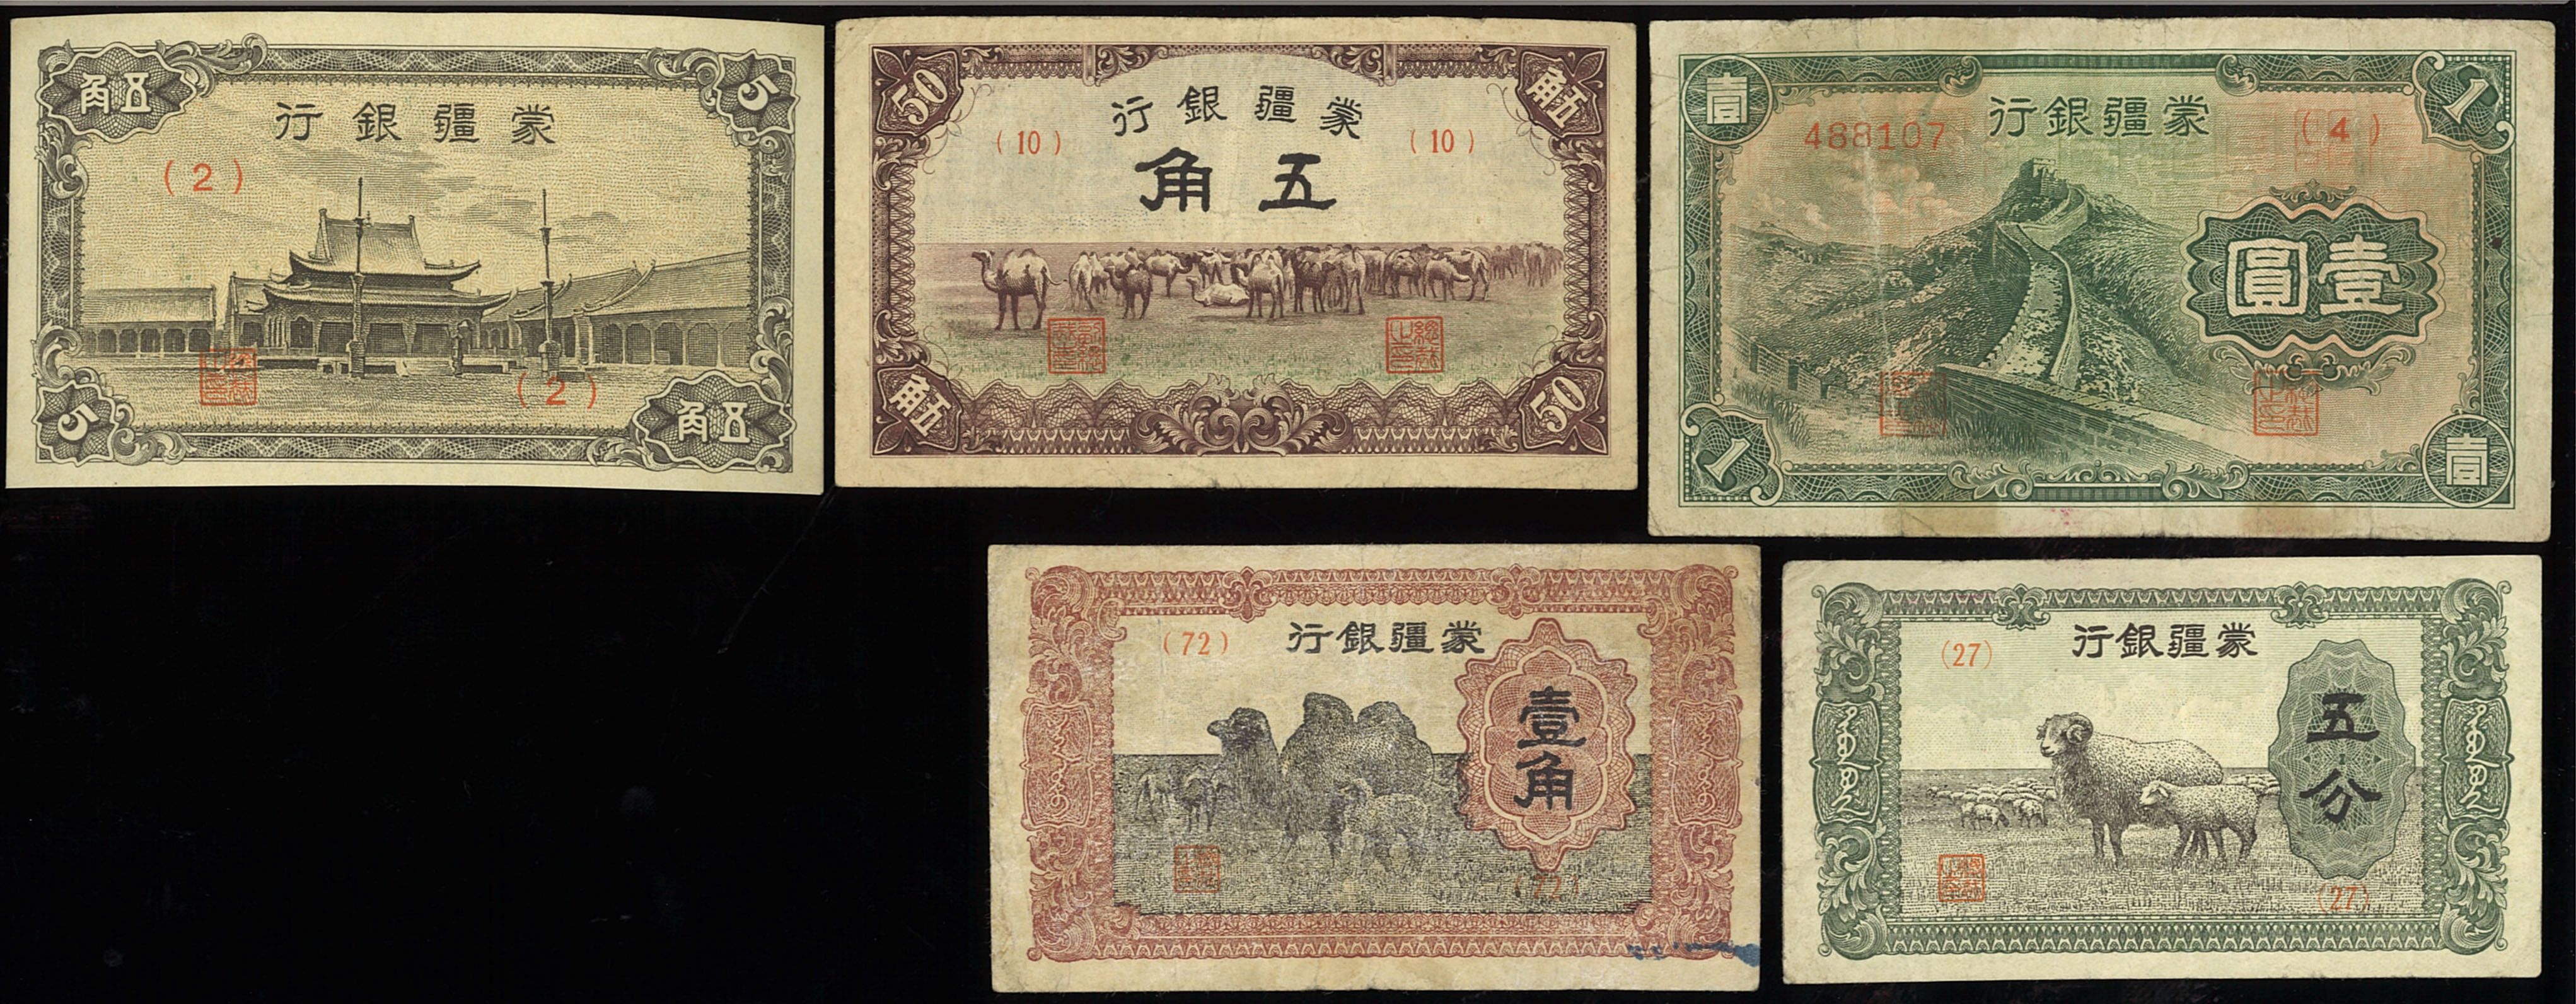 貨幣博物館 | 紙幣 Banknotes 蒙疆銀行 五分,壹角,五角(x2),壹圓(x2